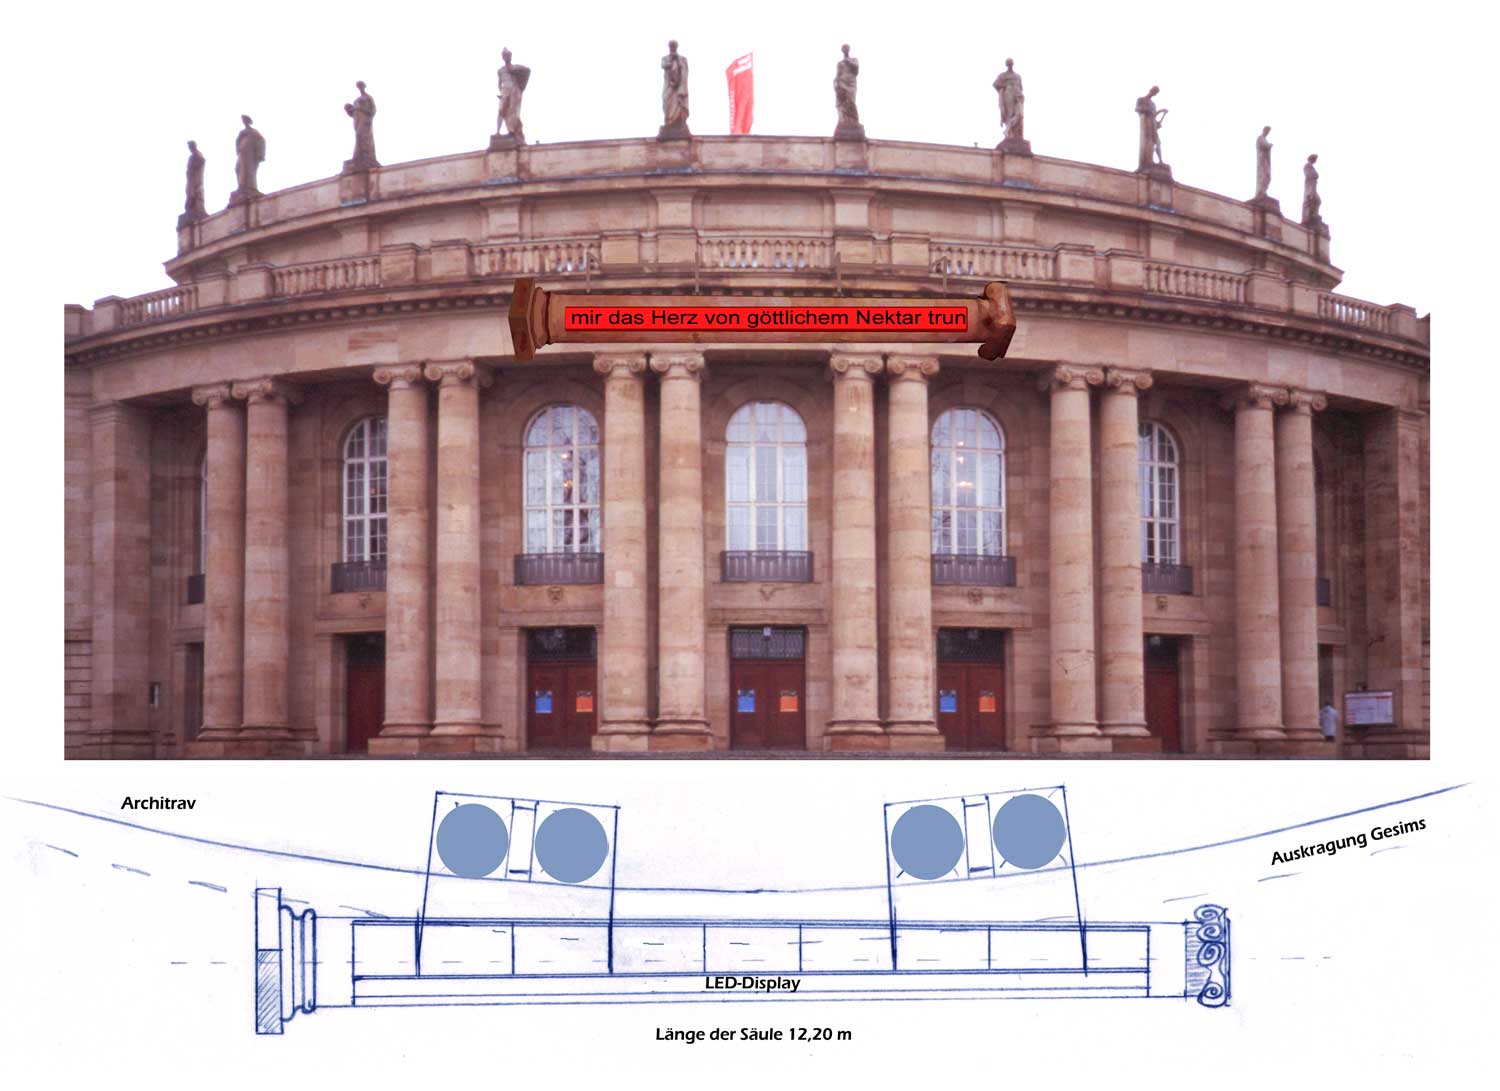 sStuttgart opera - column installation by Stih & Schnock